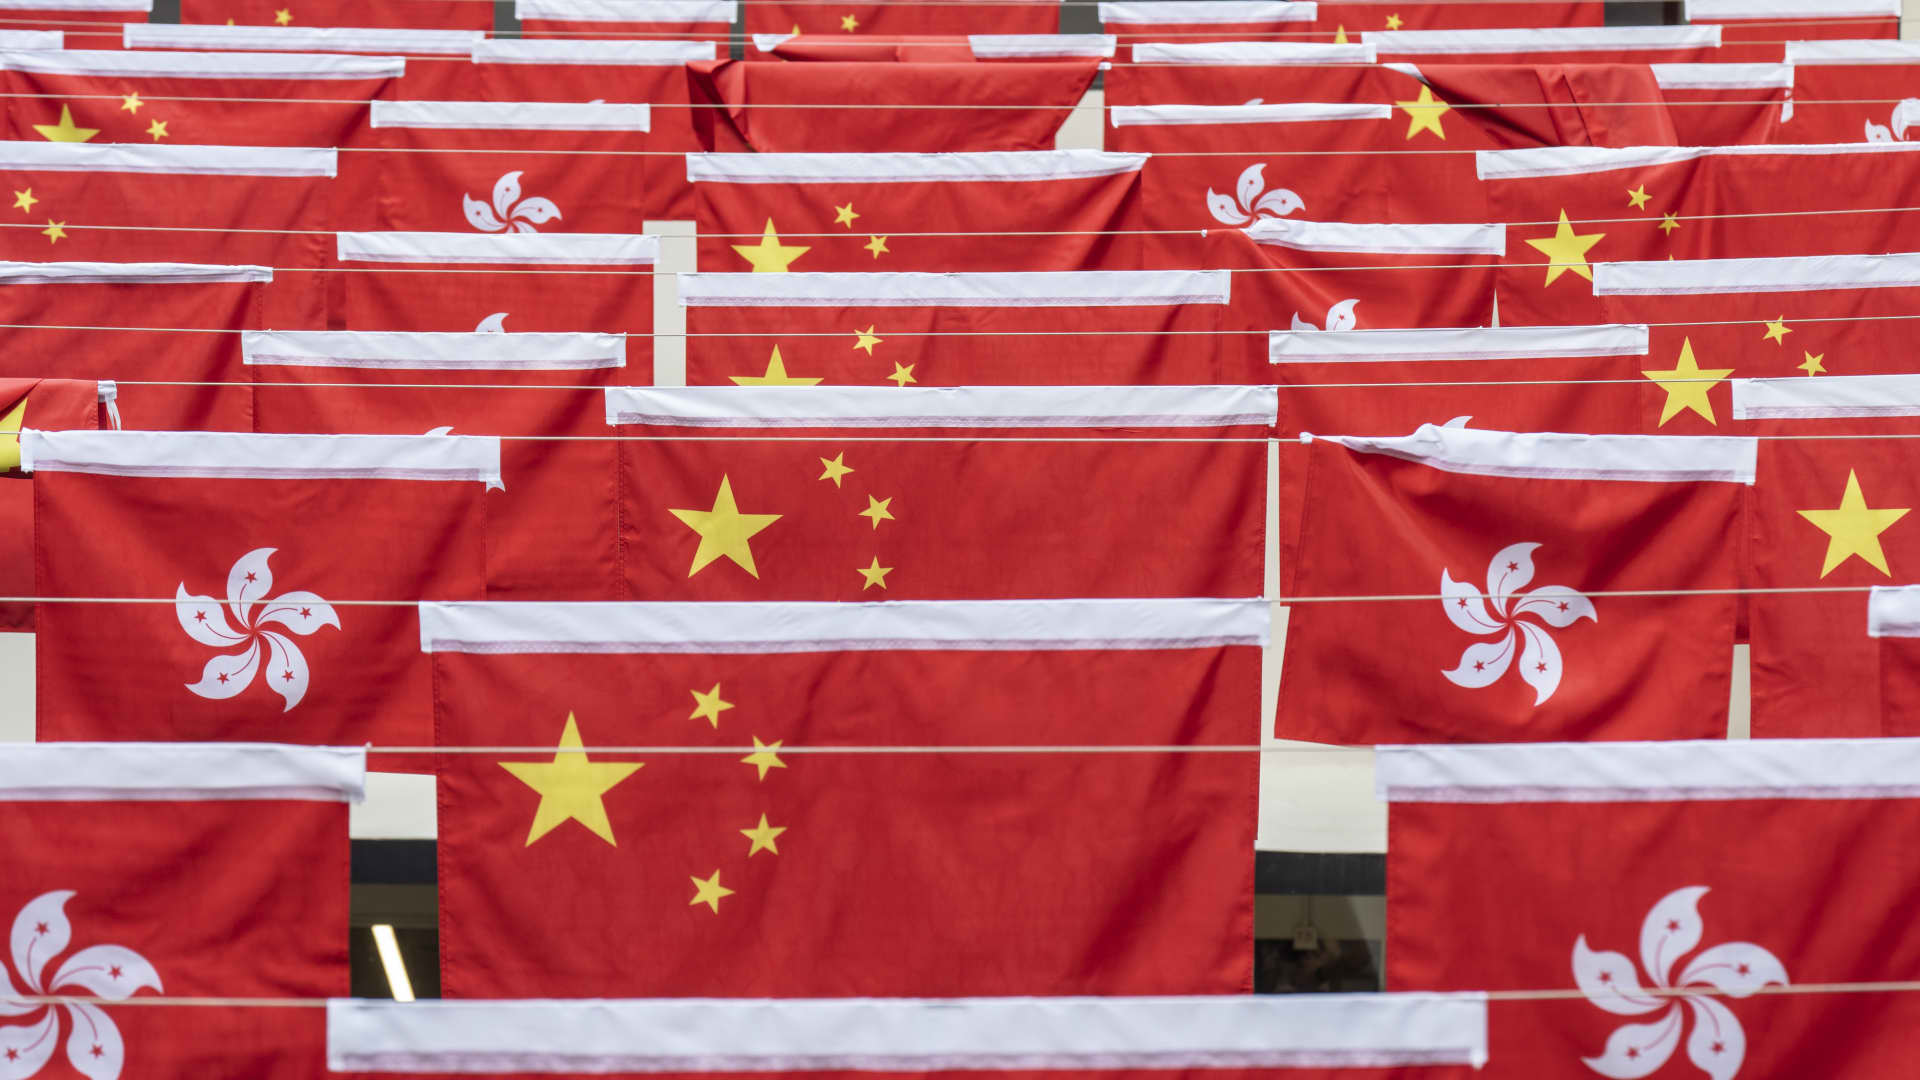 China hits back at U.S. for ‘slandering’ Hong Kong’s new security law